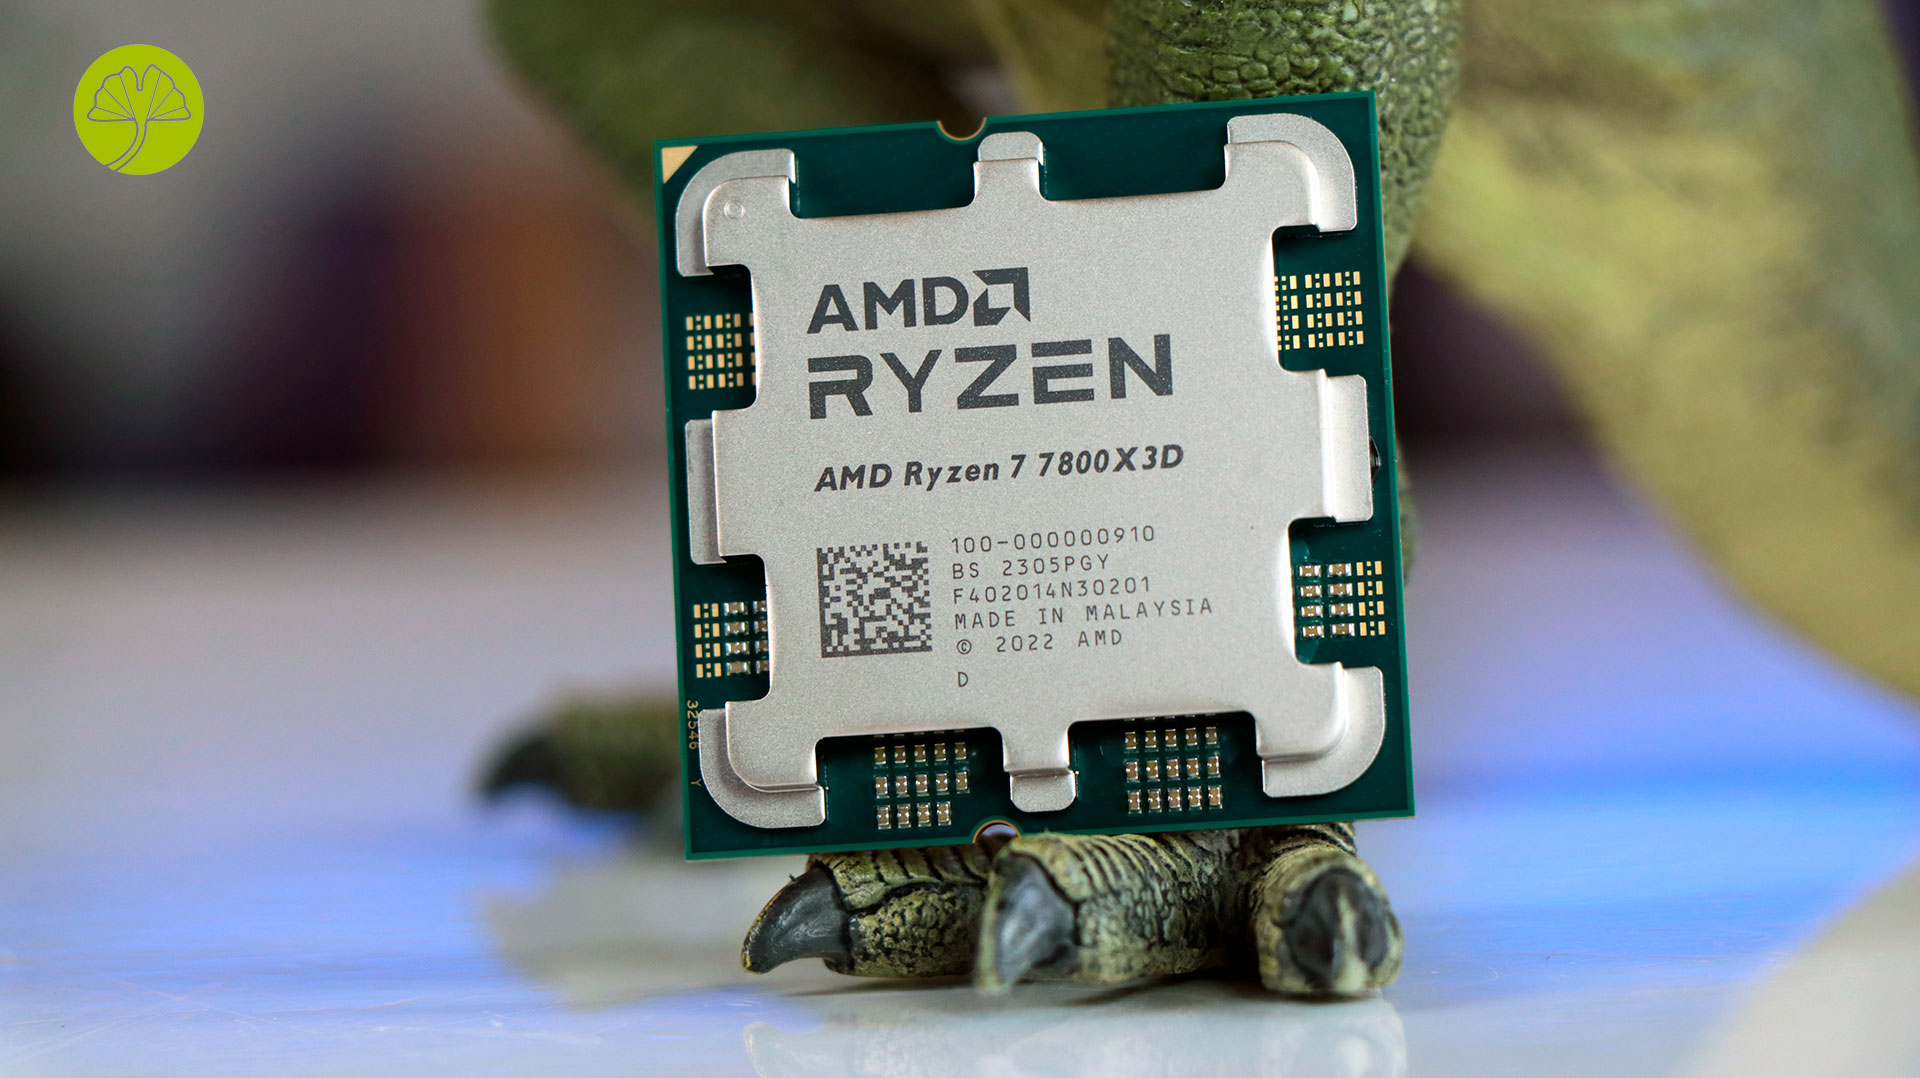 Amd ryzen 7 7800x3d цены. Ryzen 7 7800x3d. AMD 7800x3d OEM. Ryzen 5 5500 под крышкой скальпирование. Рамка для скальпированного r7 7800x3d.